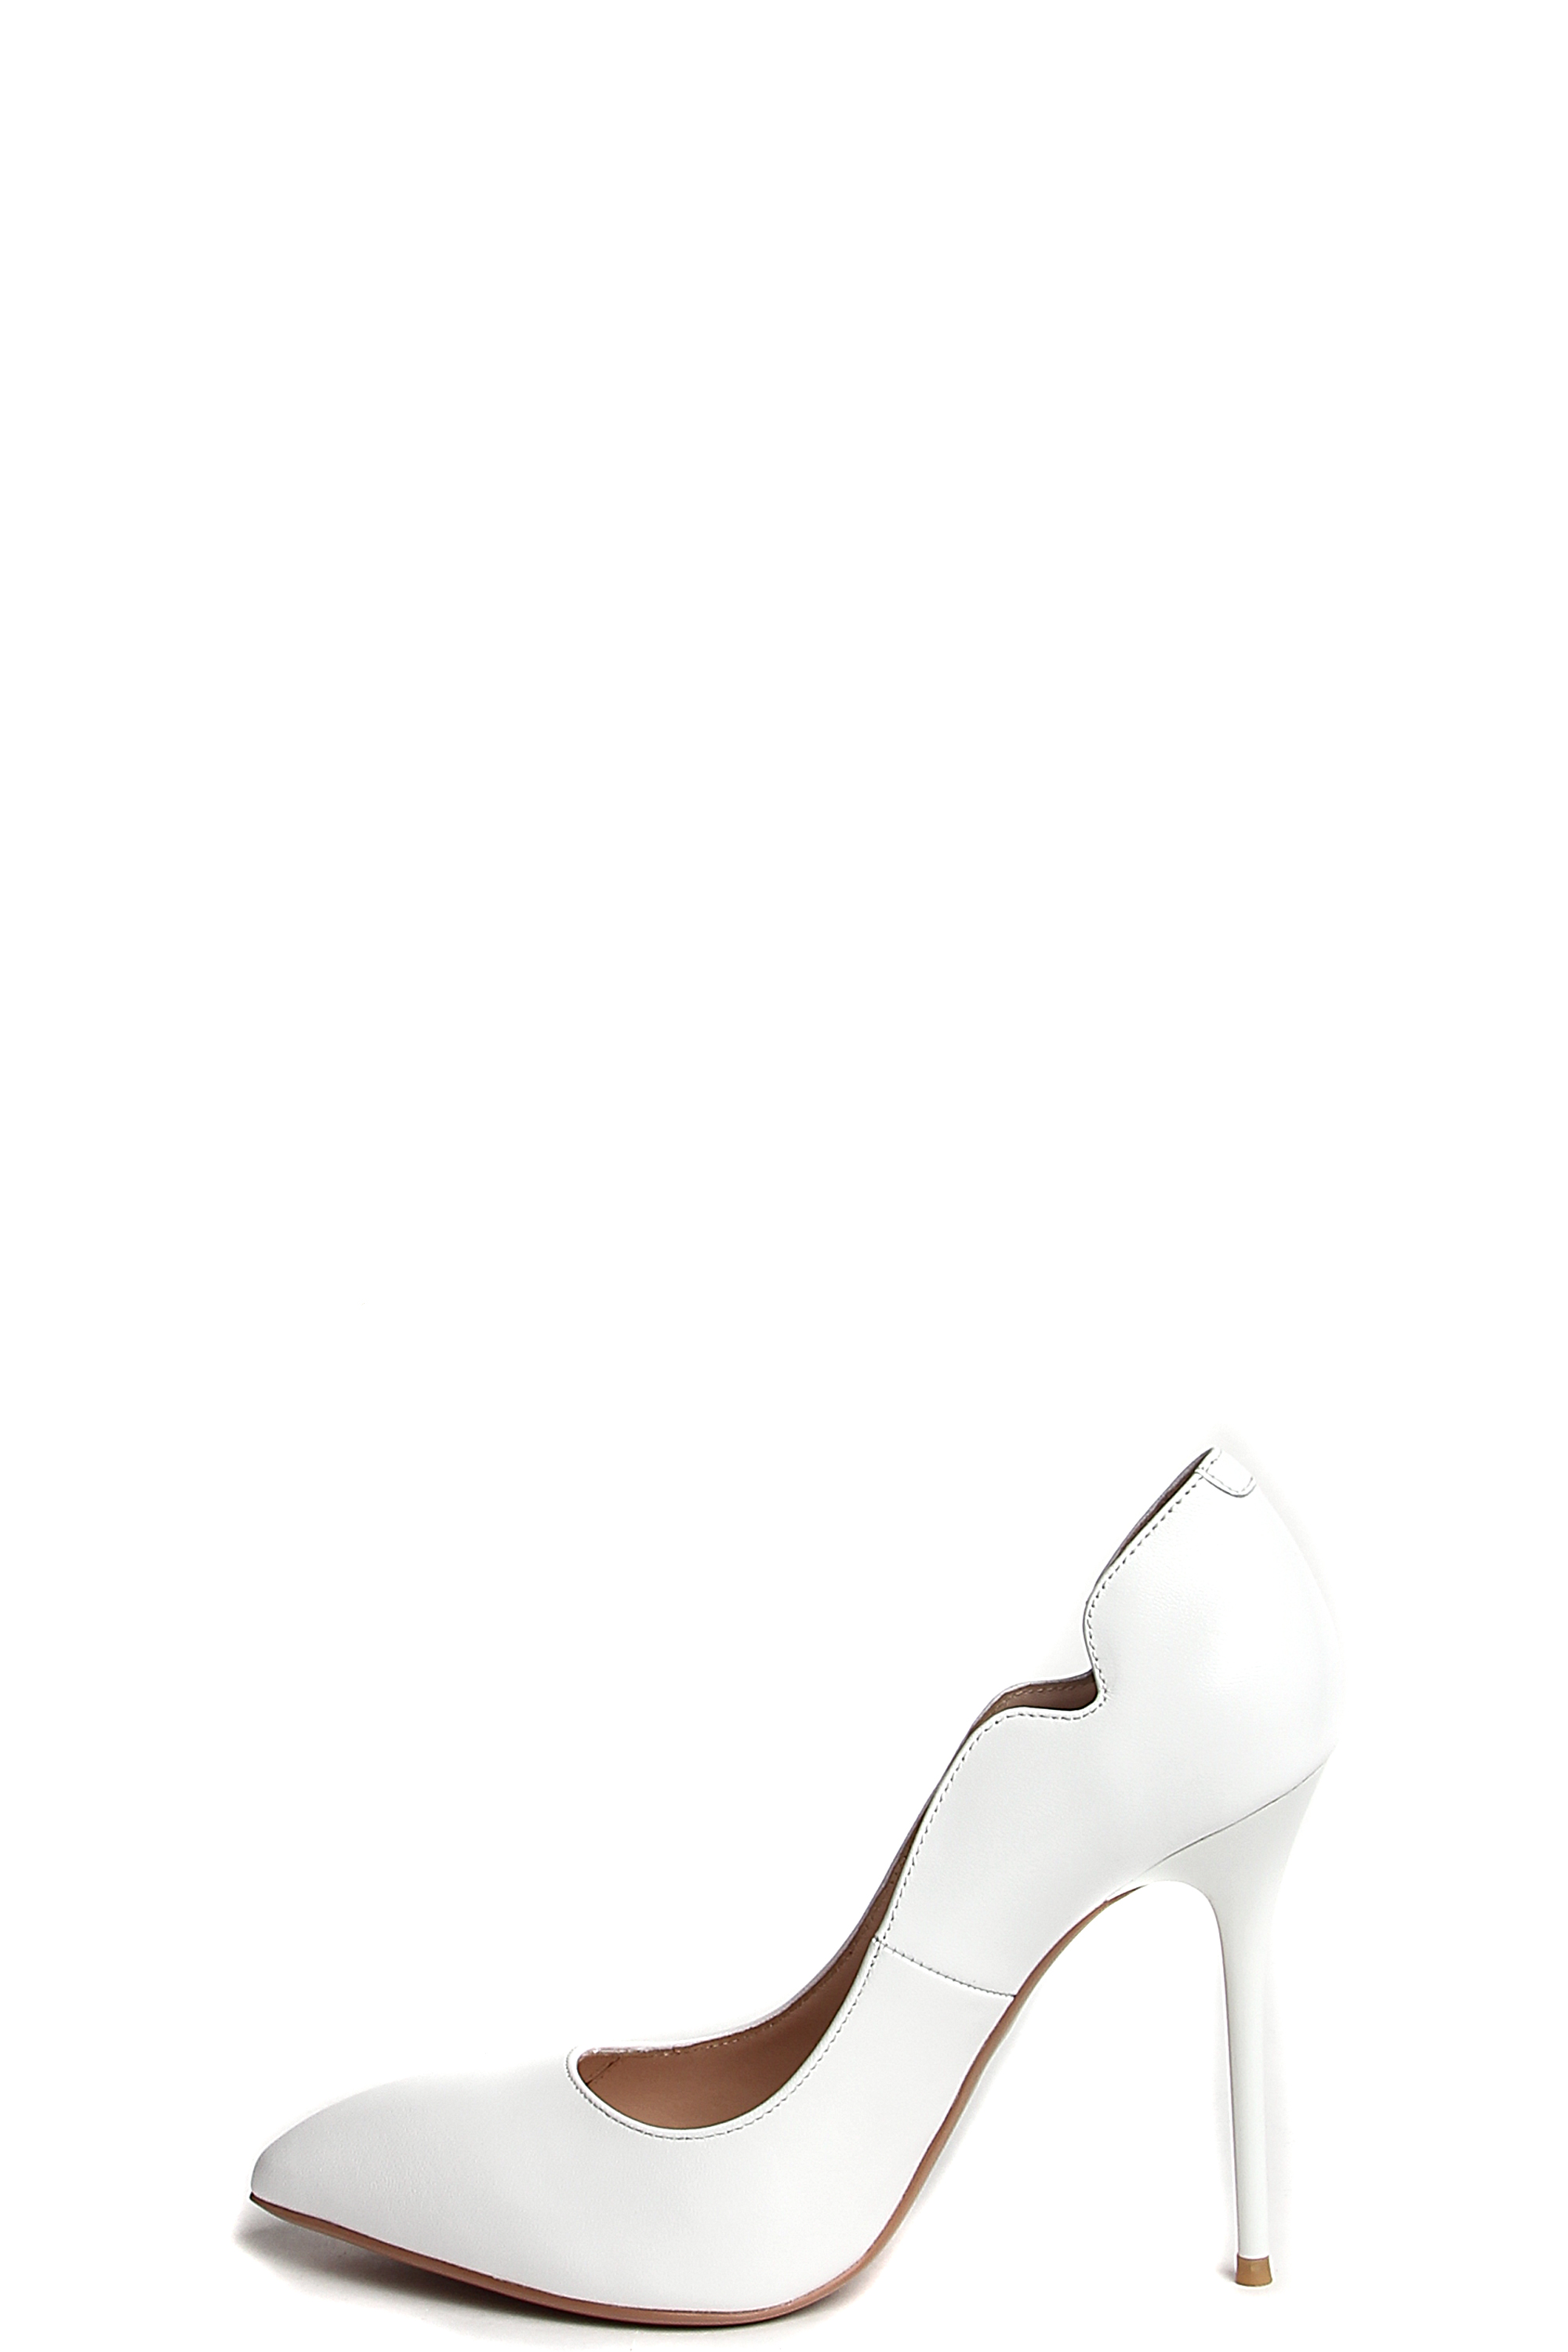 Туфли MILANA 181001-2-1301 белый - купить 10990